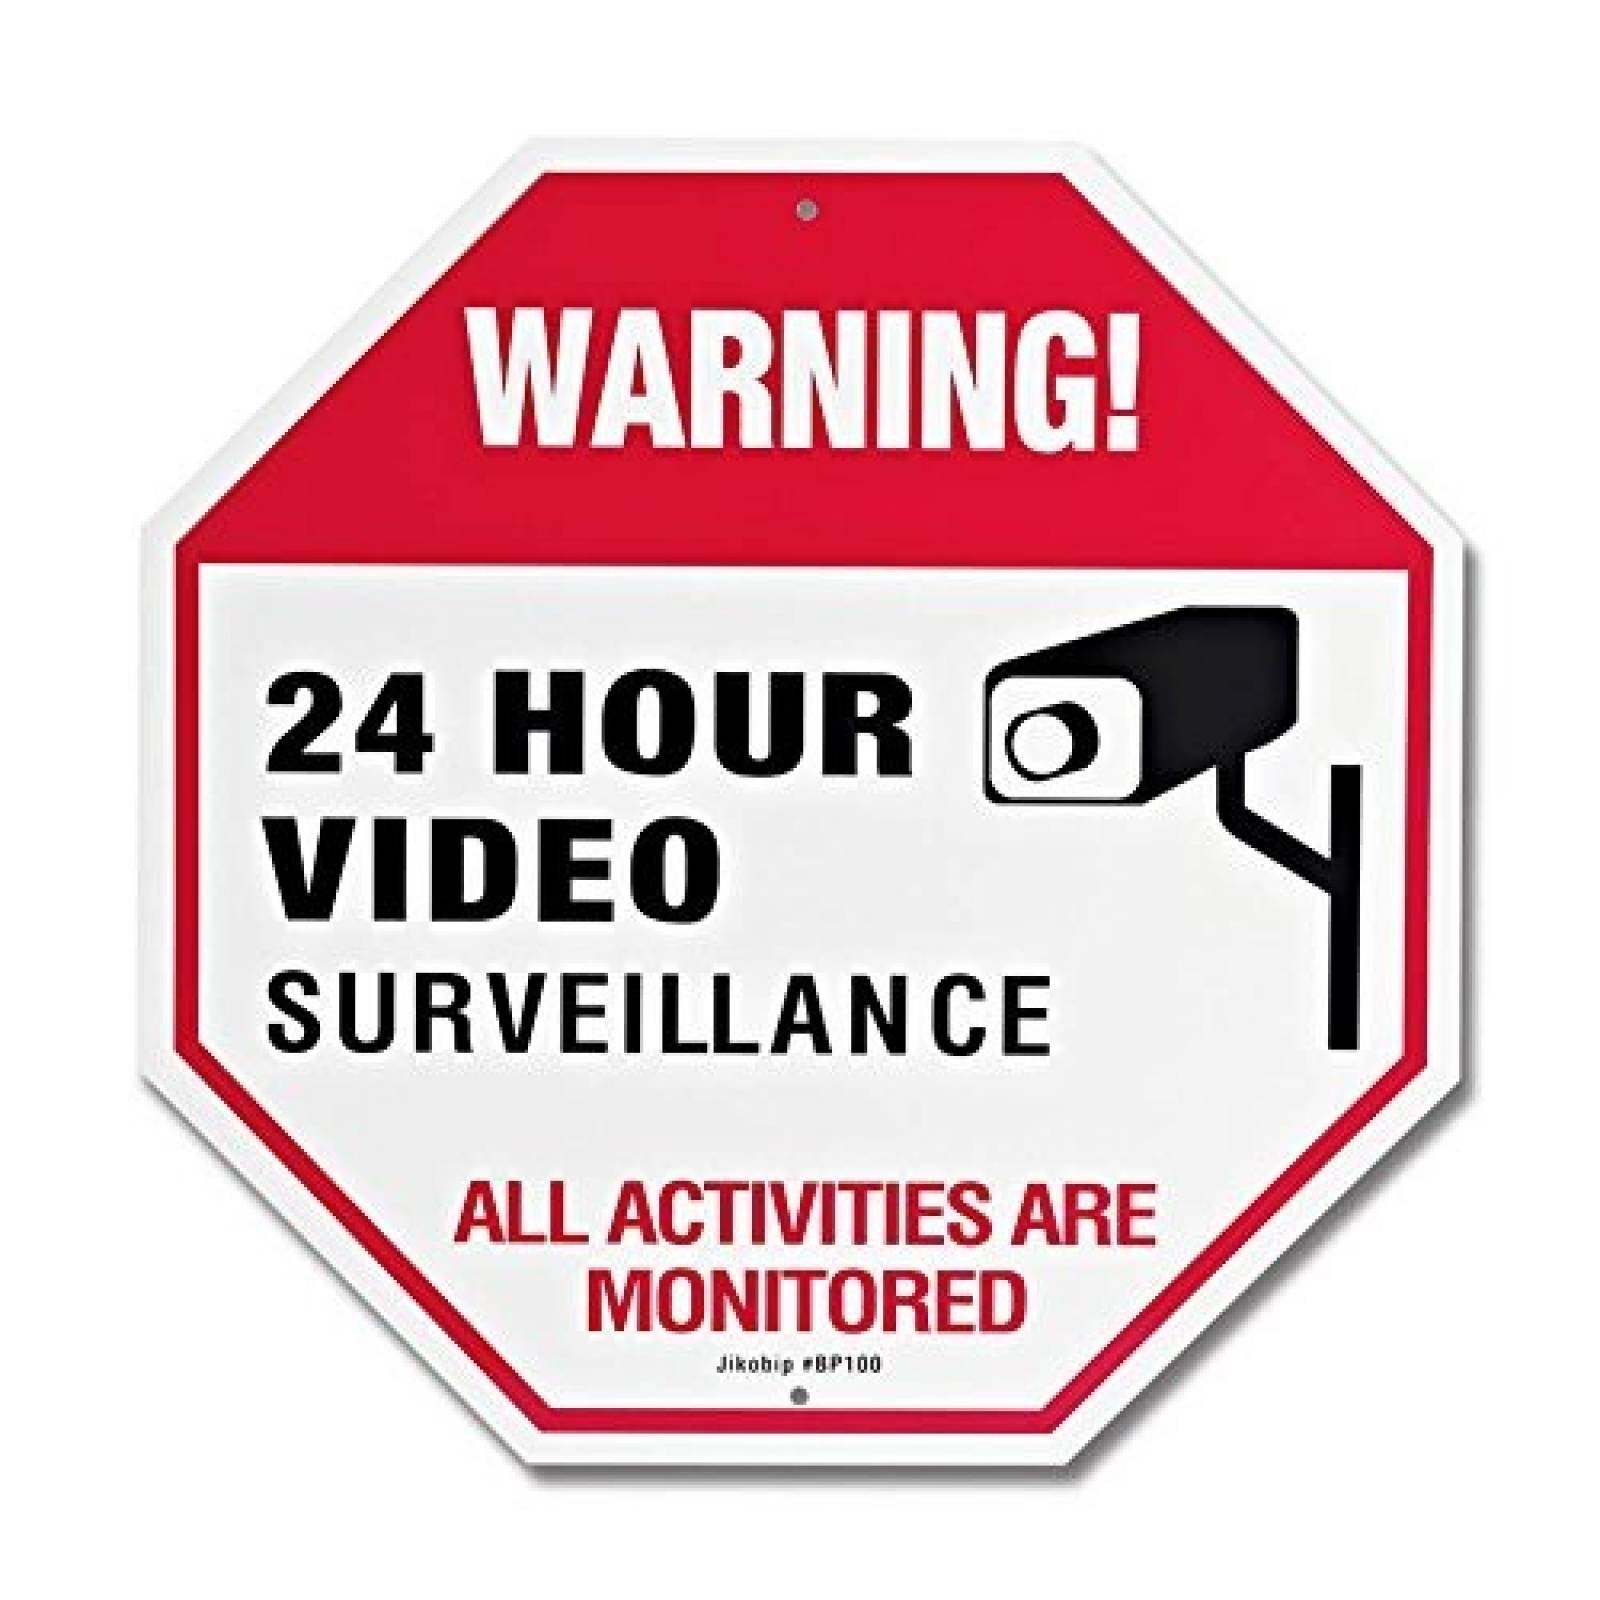 Señal de vigilancia jikobip 12 x 12" de vídeo impresión UV